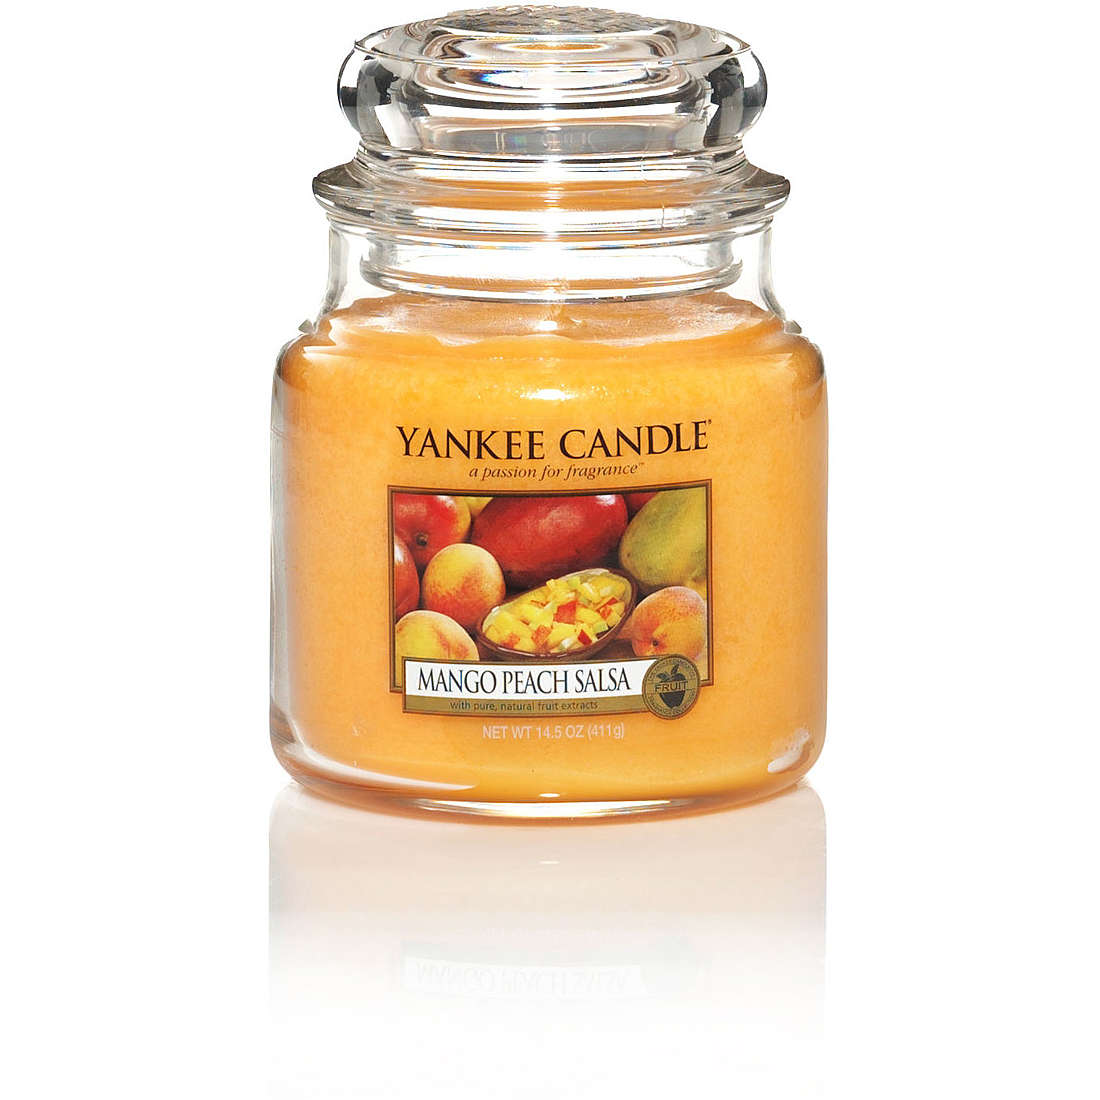 Candela Yankee Candle Giara, Media colore Arancione 1114682E